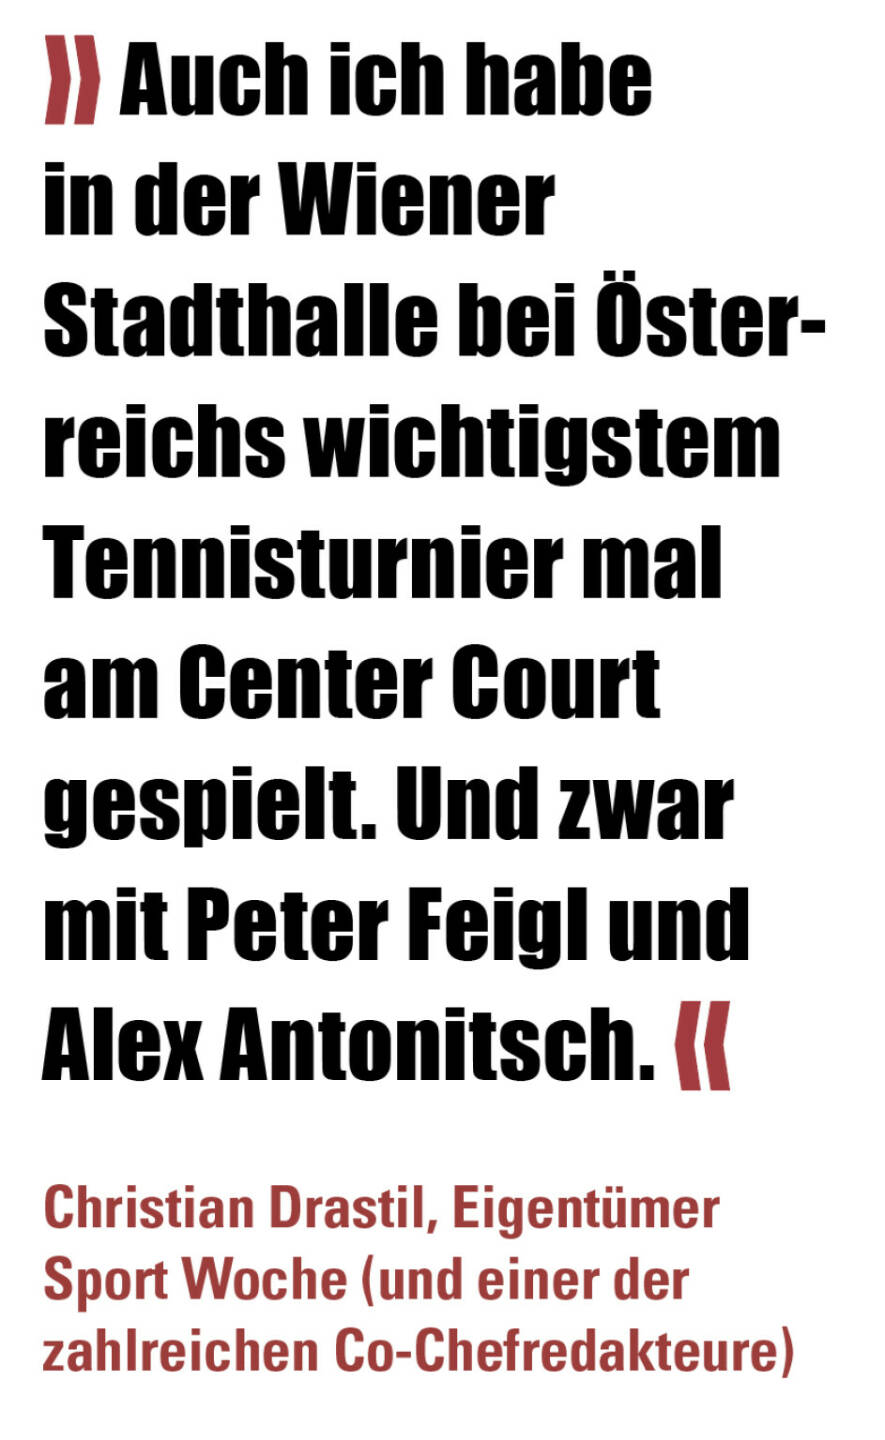 » Auch ich habe in der Wiener Stadthalle bei Österreichs wichtigstem Tennisturnier mal am Center Court gespielt. Und zwar mit Peter Feigl und Alex Antonitsch. «
Christian Drastil, Eigentümer Sport Woche (und einer der zahlreichen Co-Chefredakteure) 